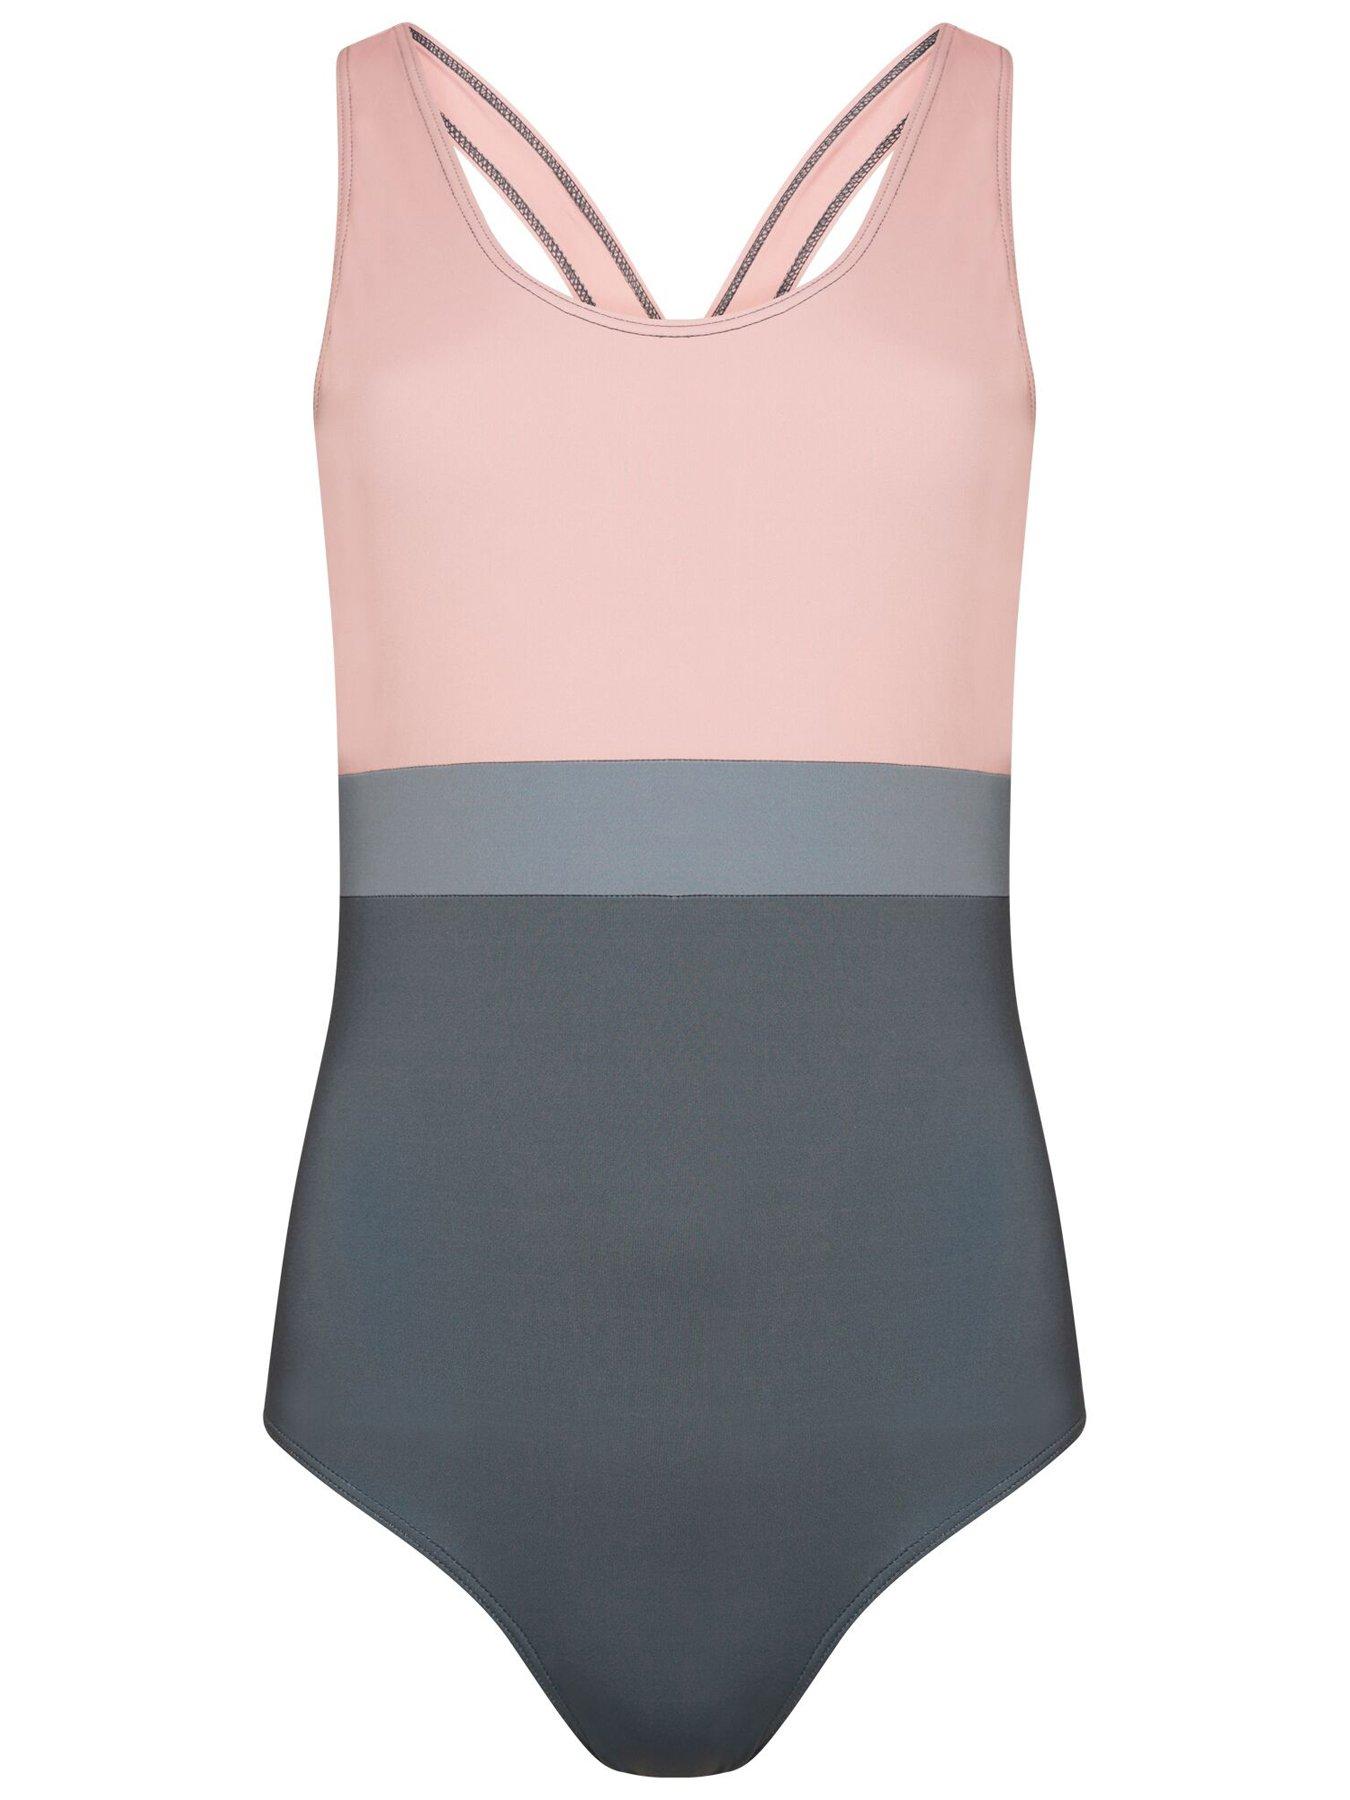 Dare 2b Laura Whitmore Make Waves Swim Suit - Powder Pink | very.co.uk